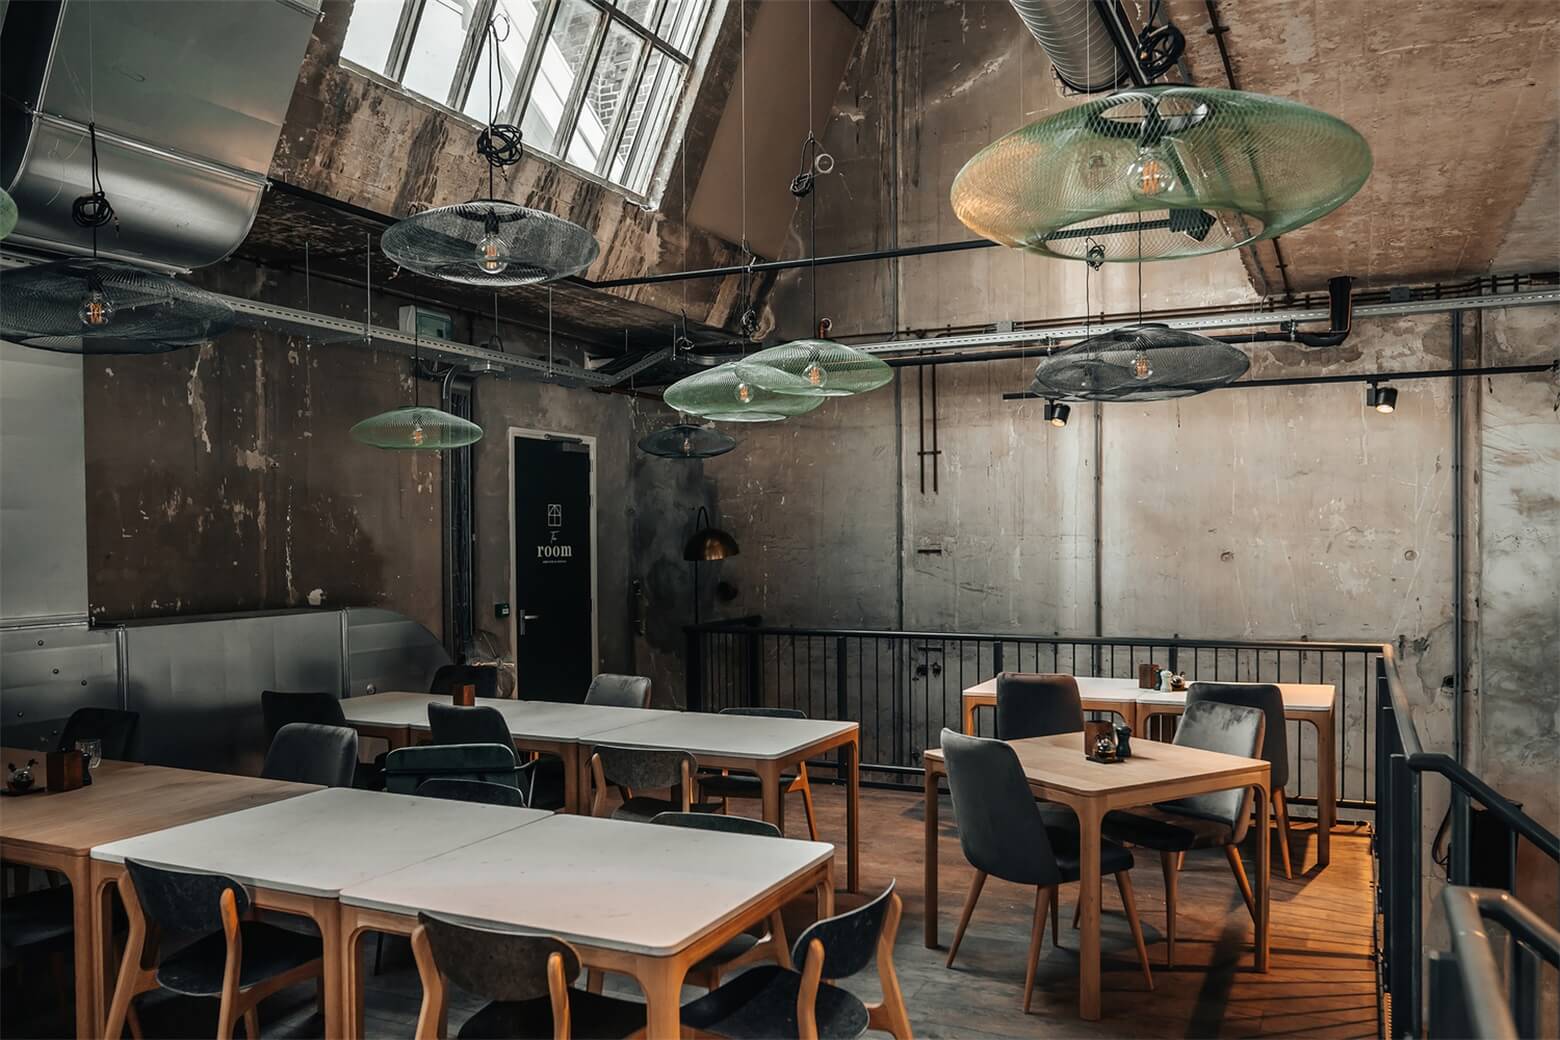 Thiết kế quán cafe bằng việc tận dụng các vật liệu tái chế tạo ra không gian đầy hoài niệm